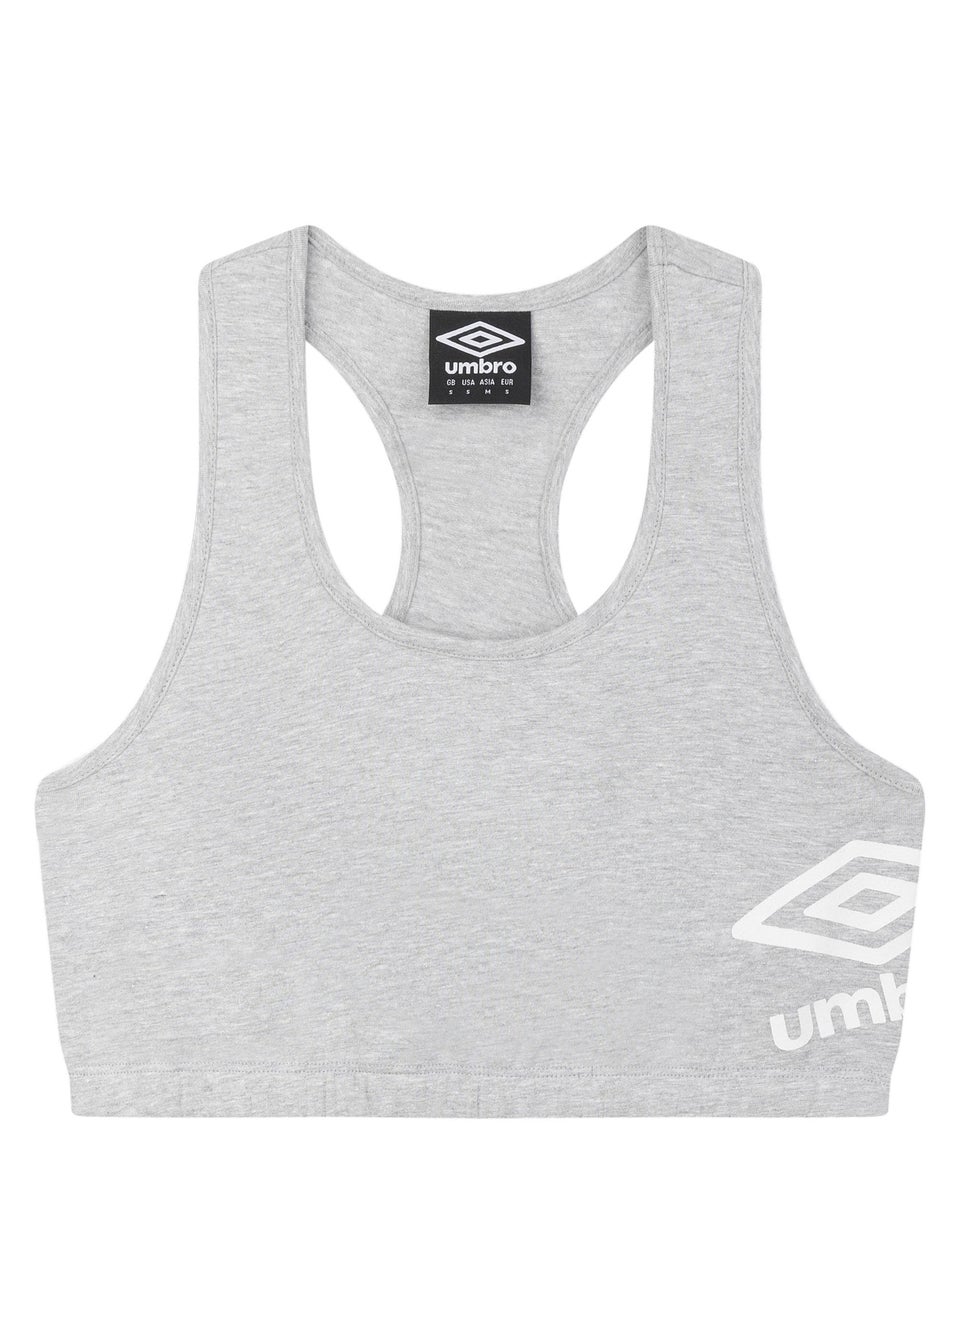 Umbro Grey/White Core Logo Sports Bra